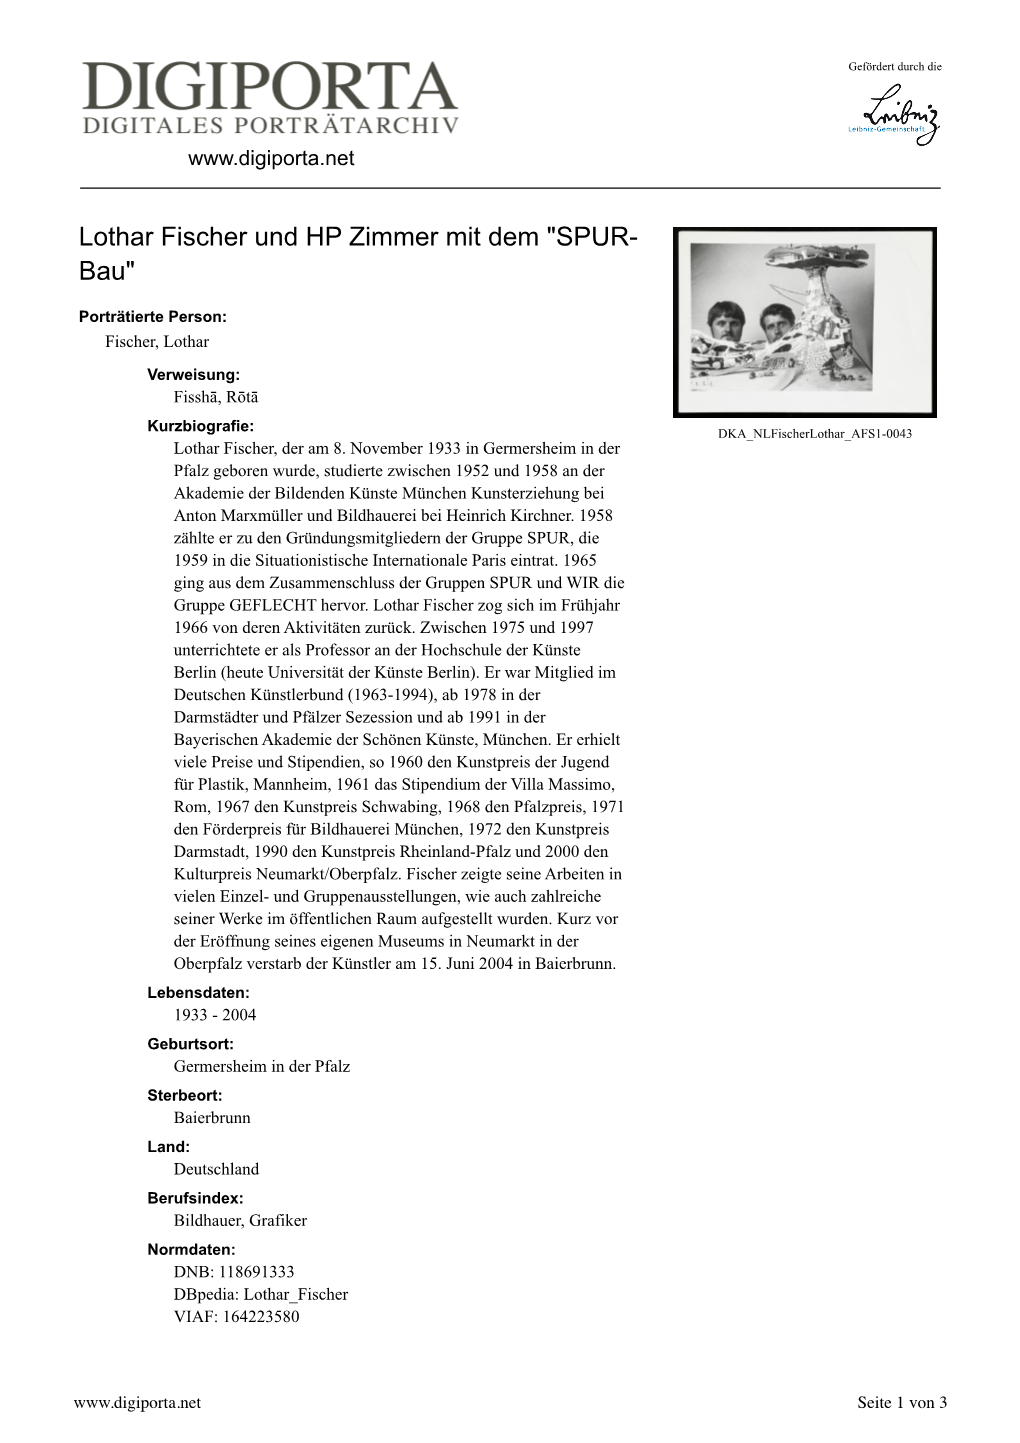 Lothar Fischer Und HP Zimmer Mit Dem "SPUR- Bau"